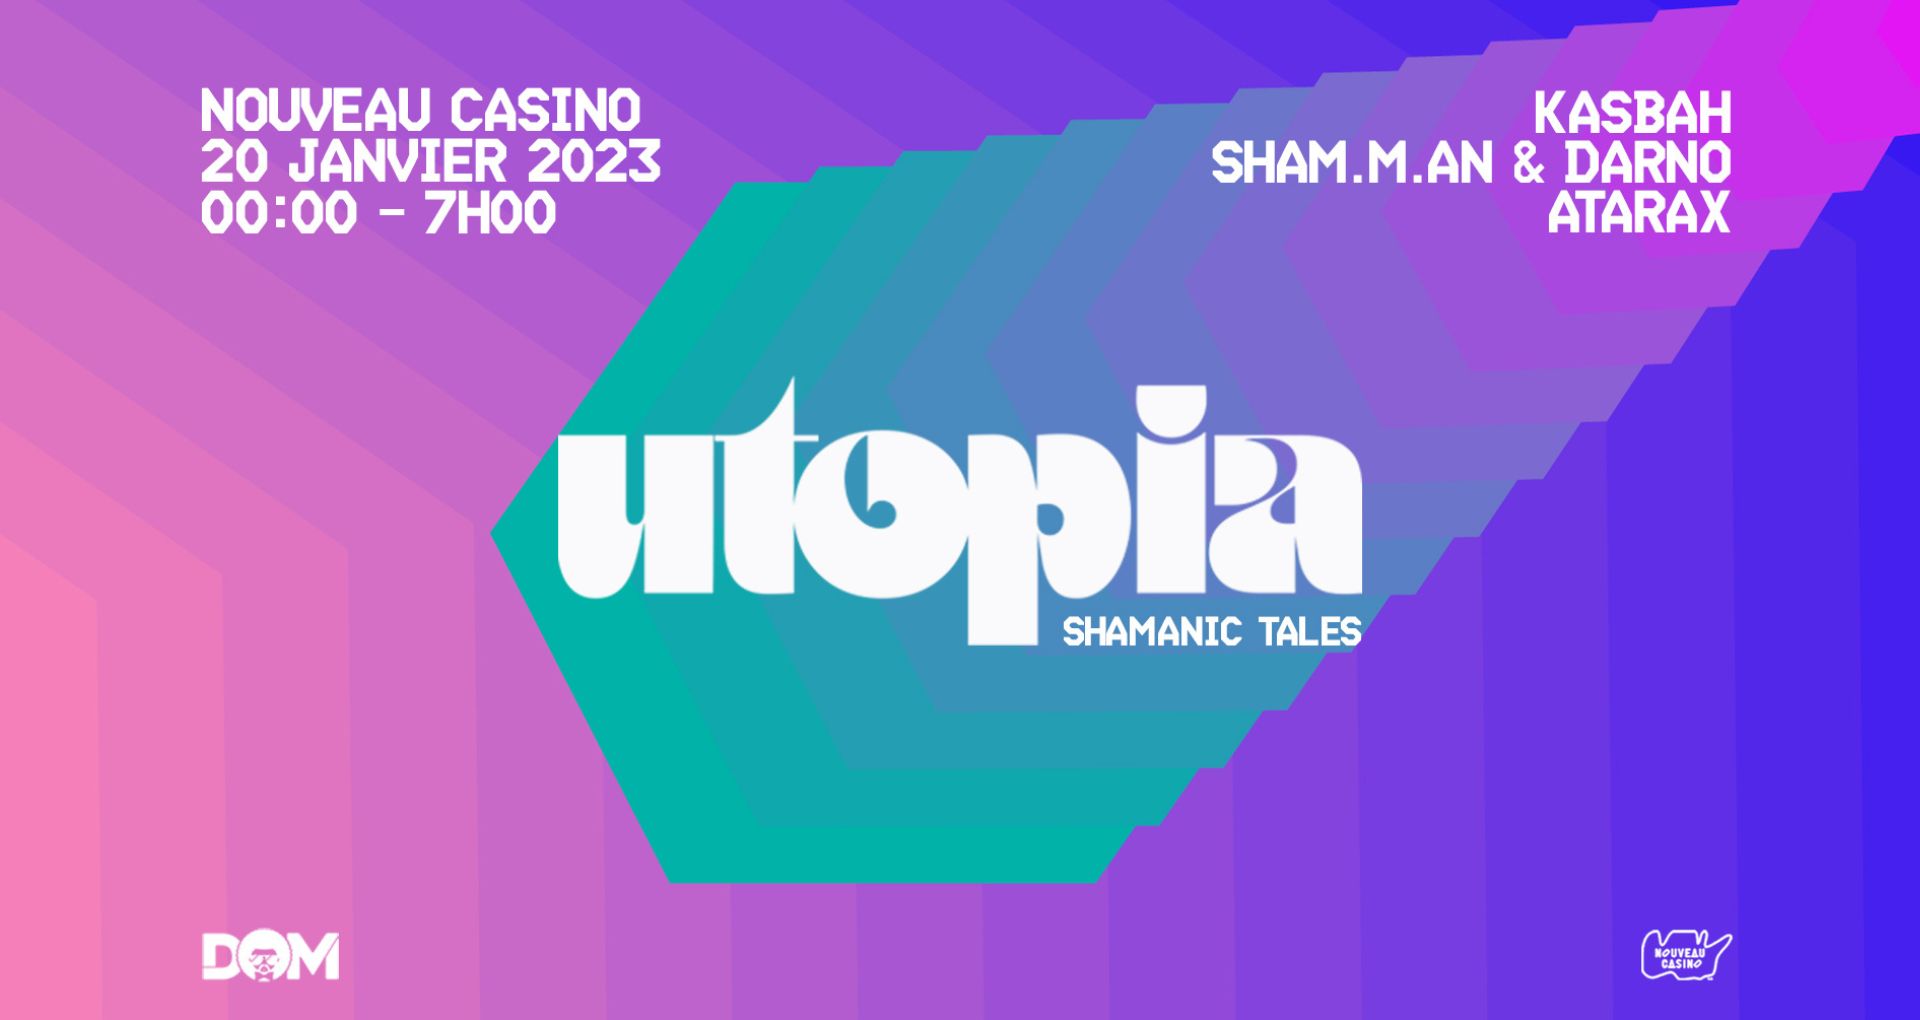 Affiche de la soirée Utopia au Nouveau Casino